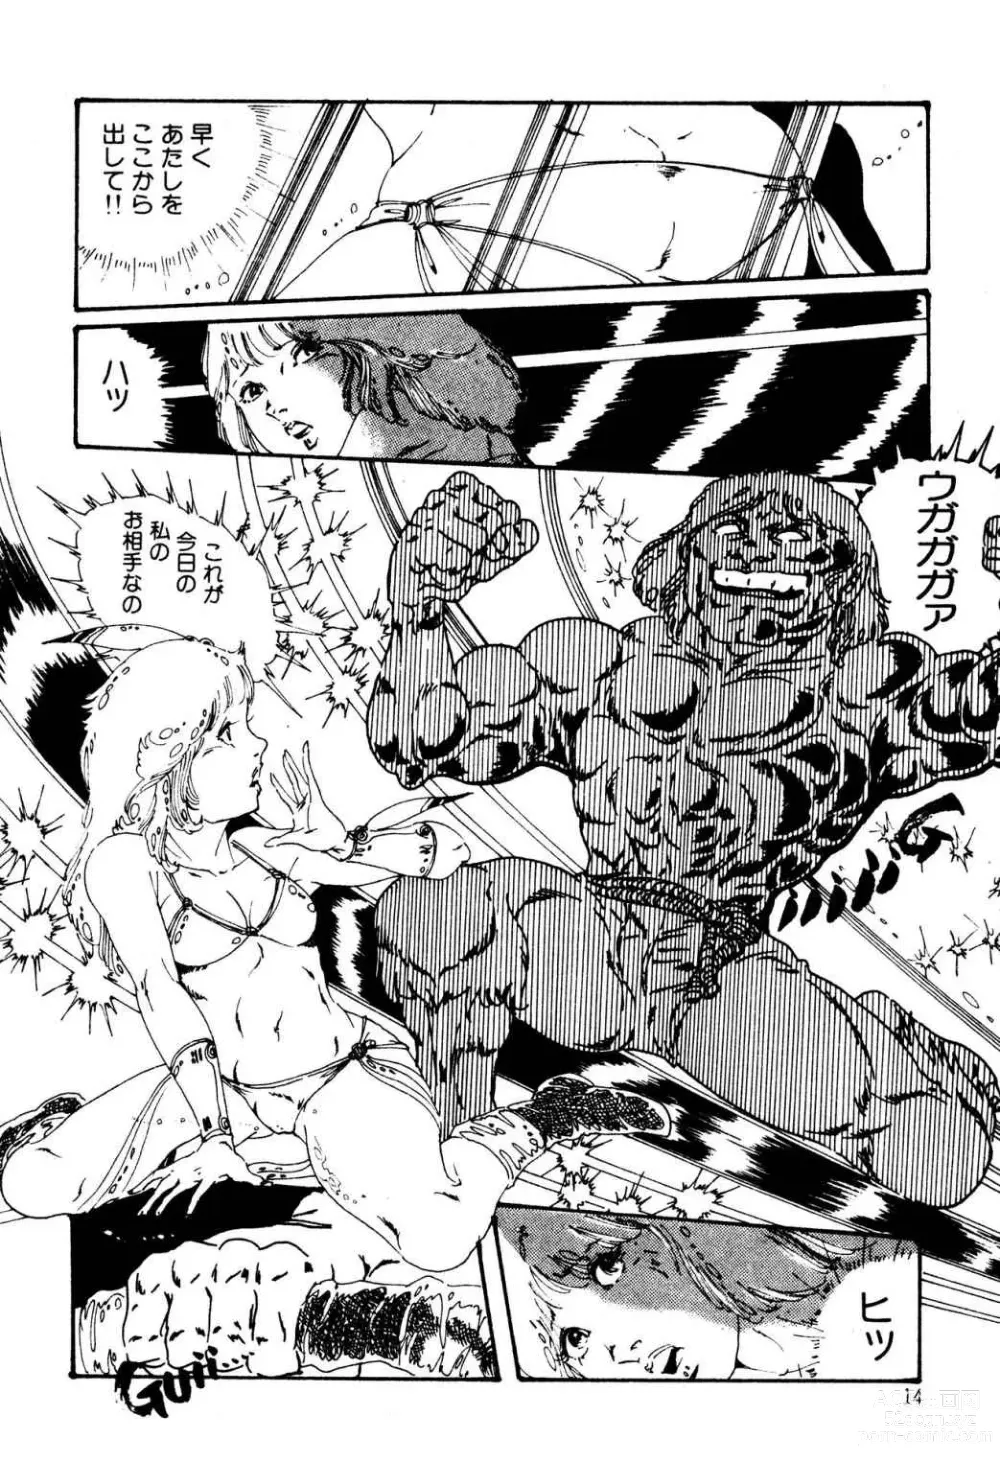 Page 14 of manga Kimamana Yousei